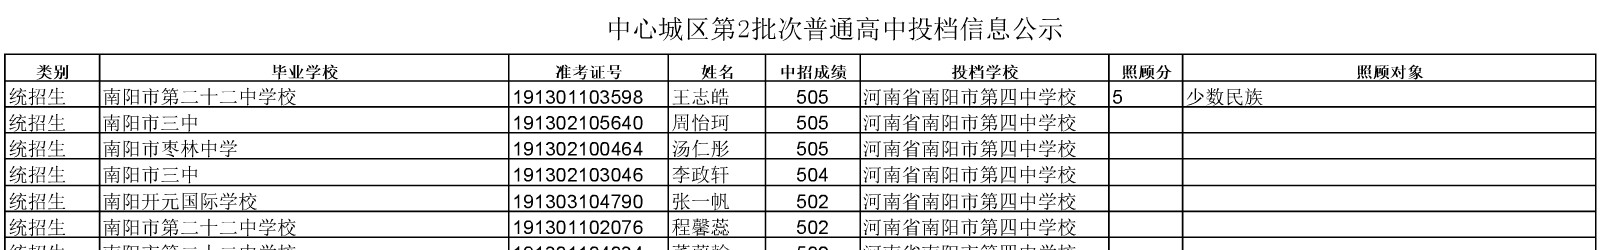 2019南阳市第二批普通高中统招生录取名单公示1